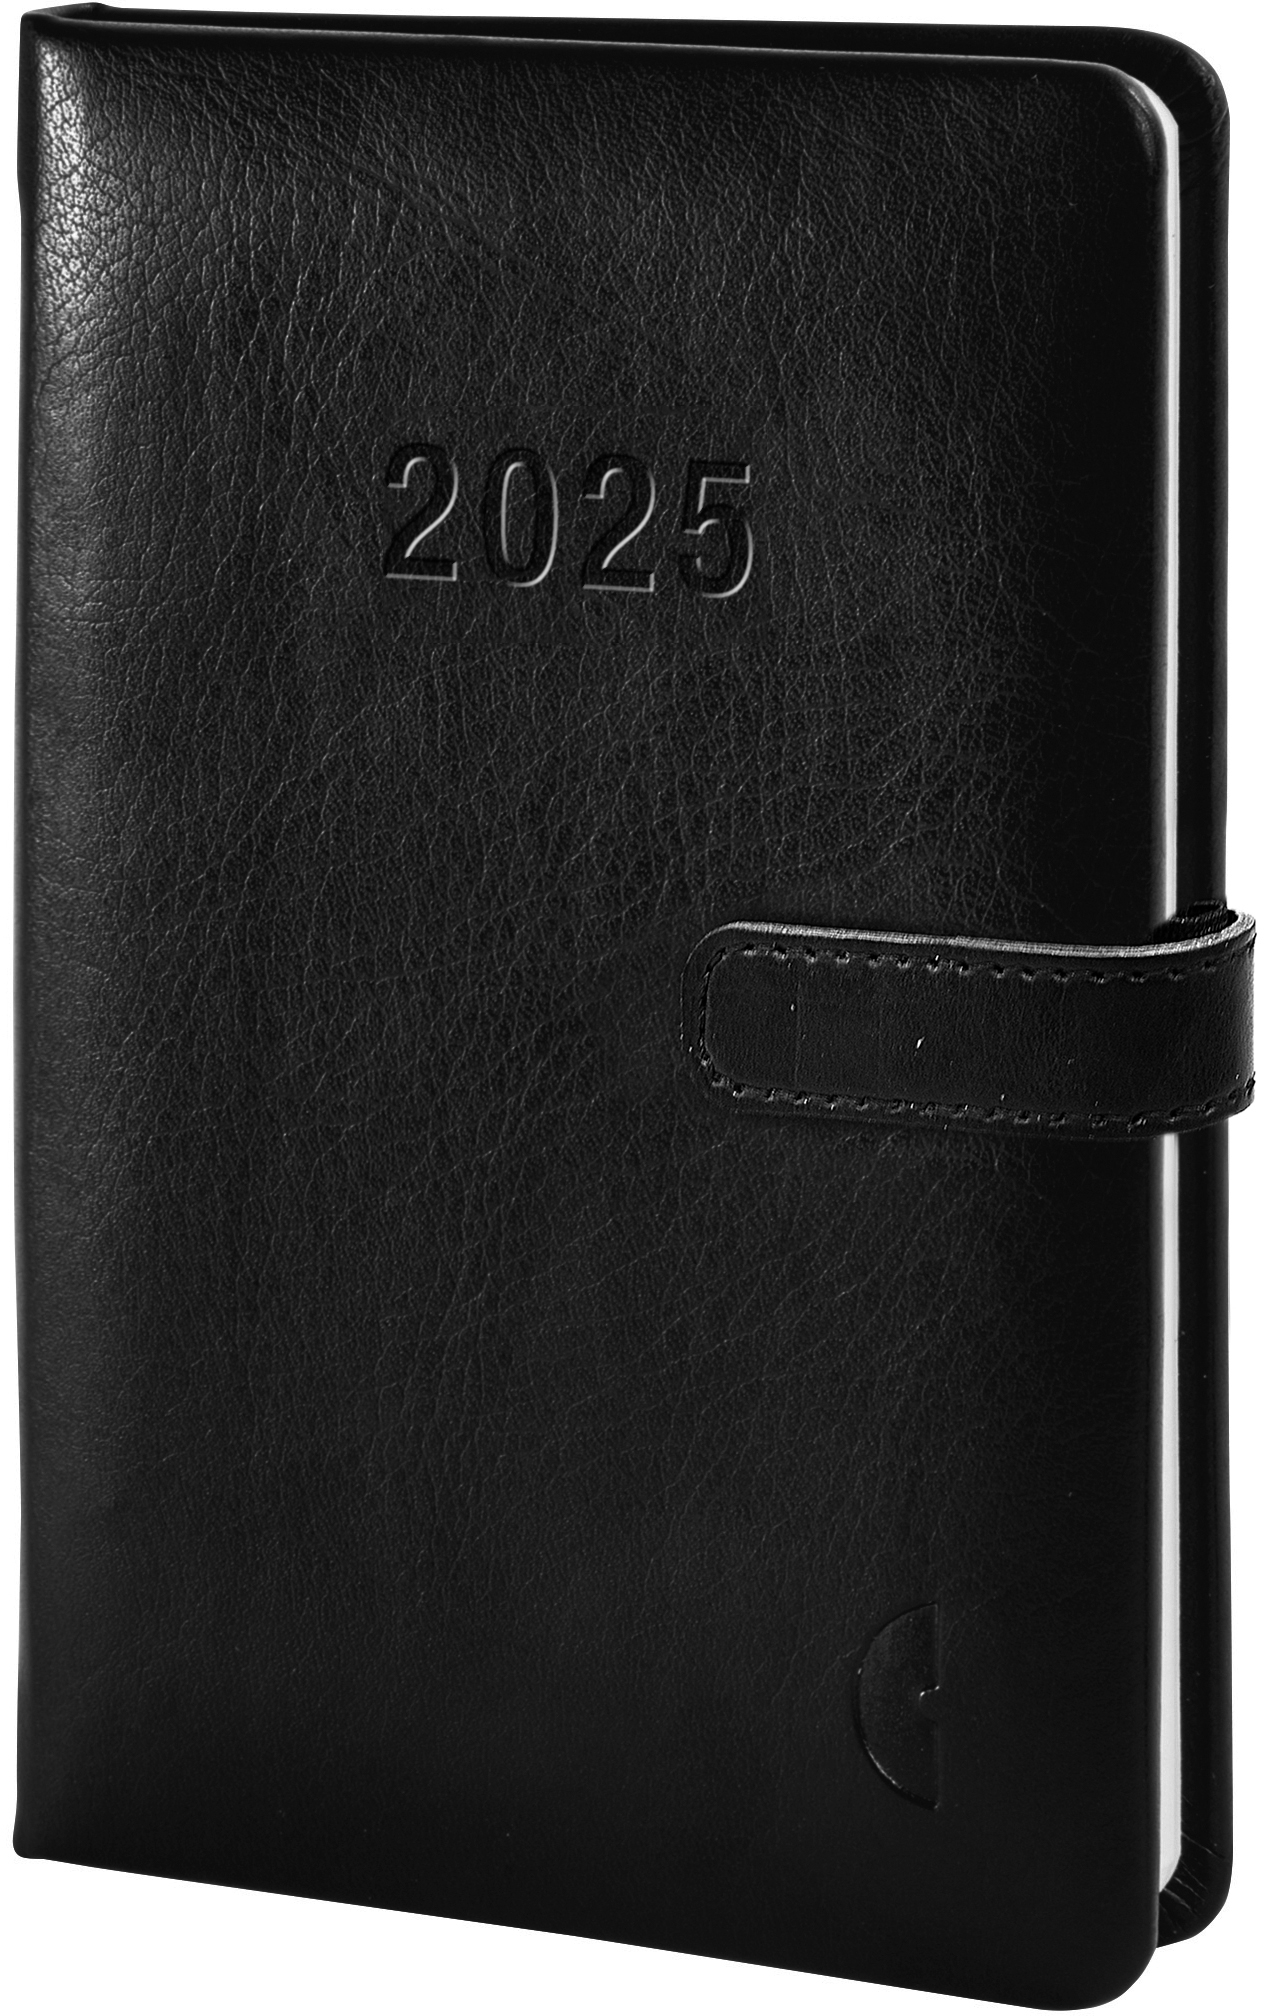 CHRONOPLAN Chronobook Business 2025 50825Z.25 1S/2P noir 9.5x14cm